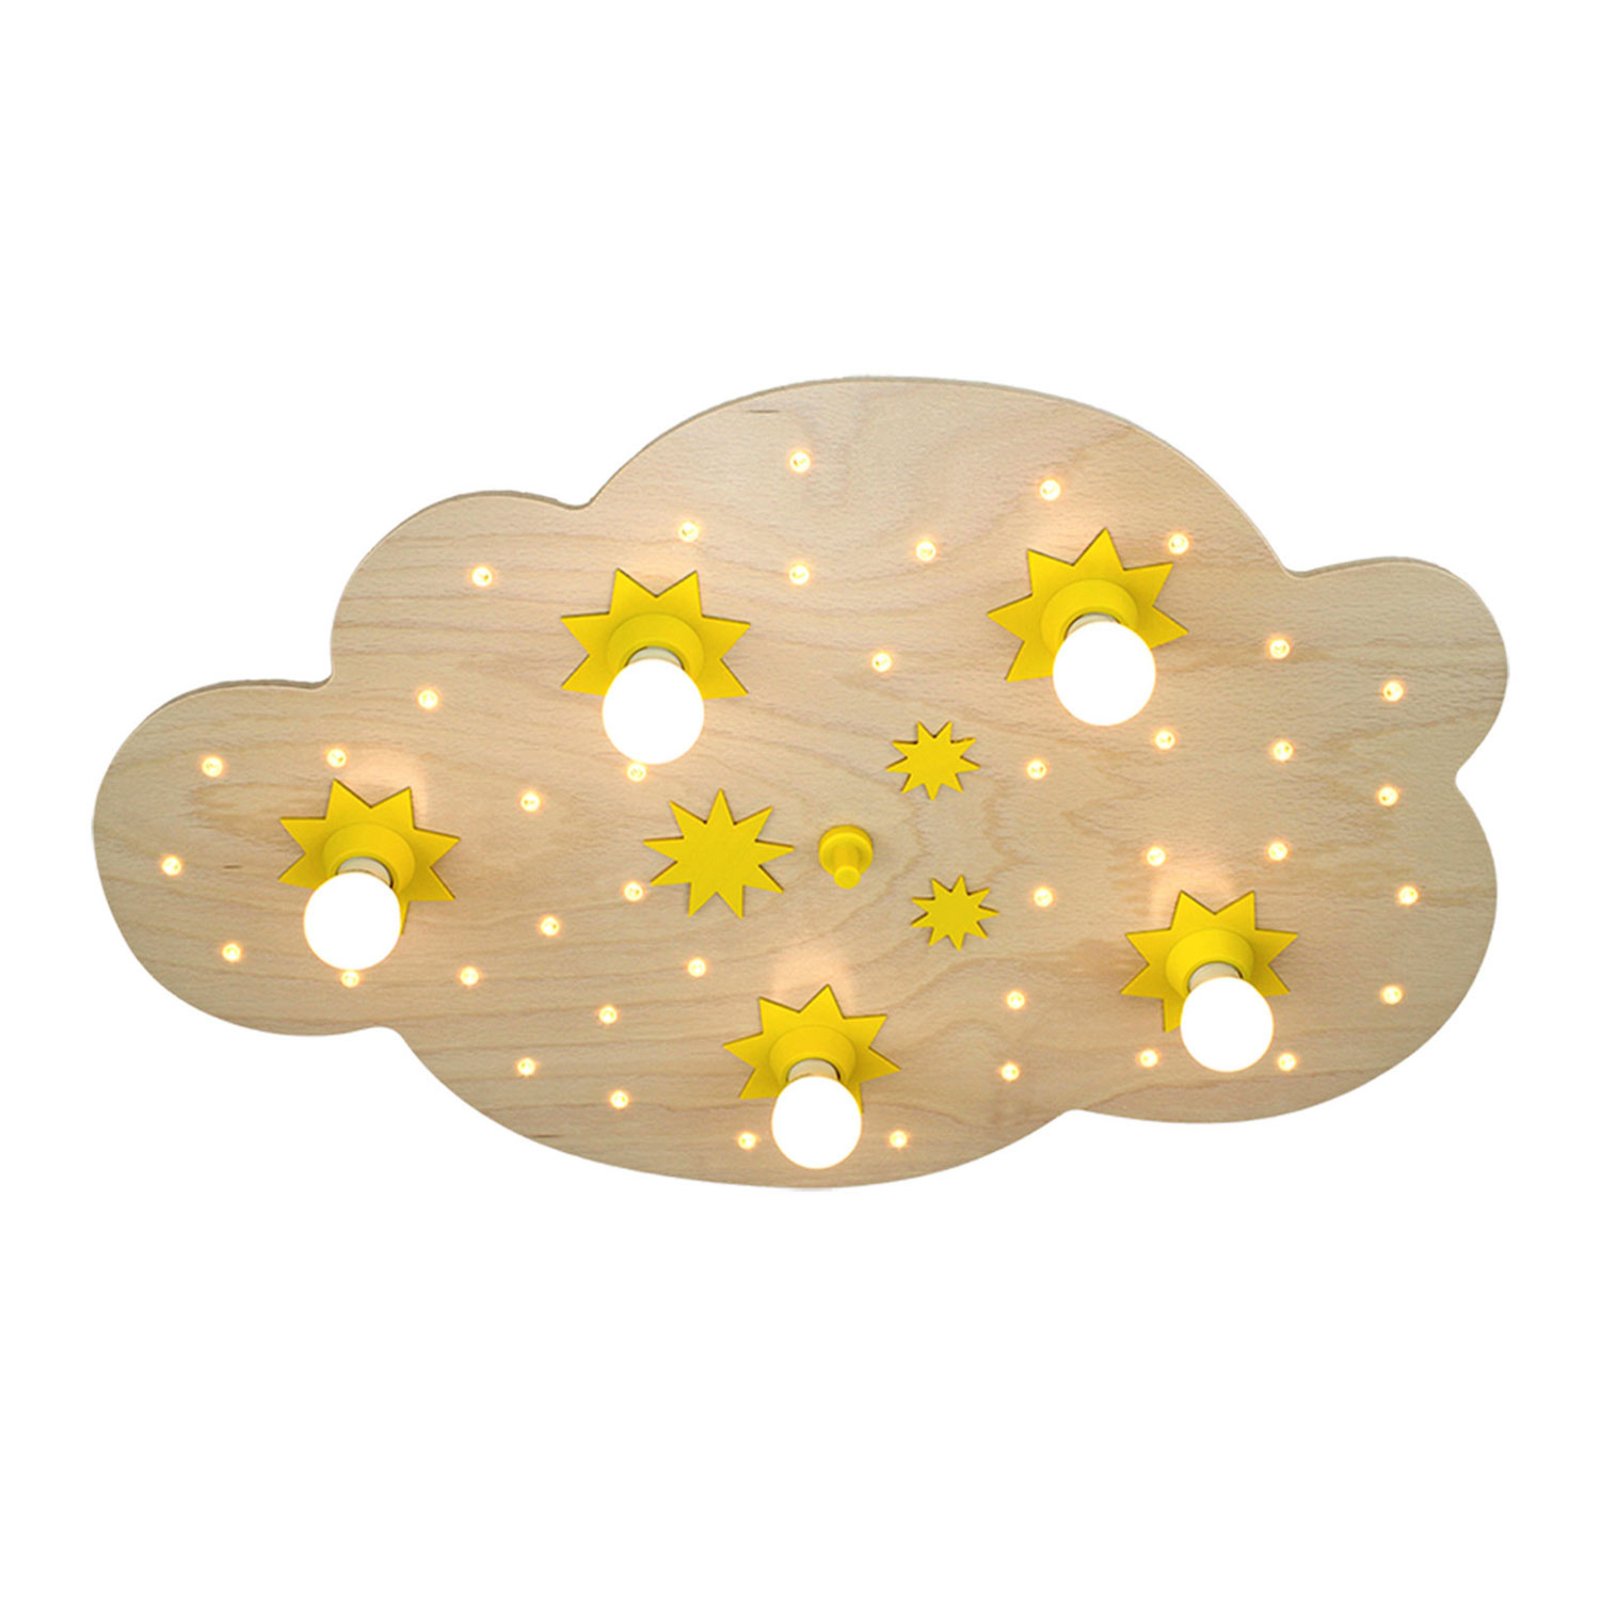 Star Cloud ceiling light, natural beech, 75 cm